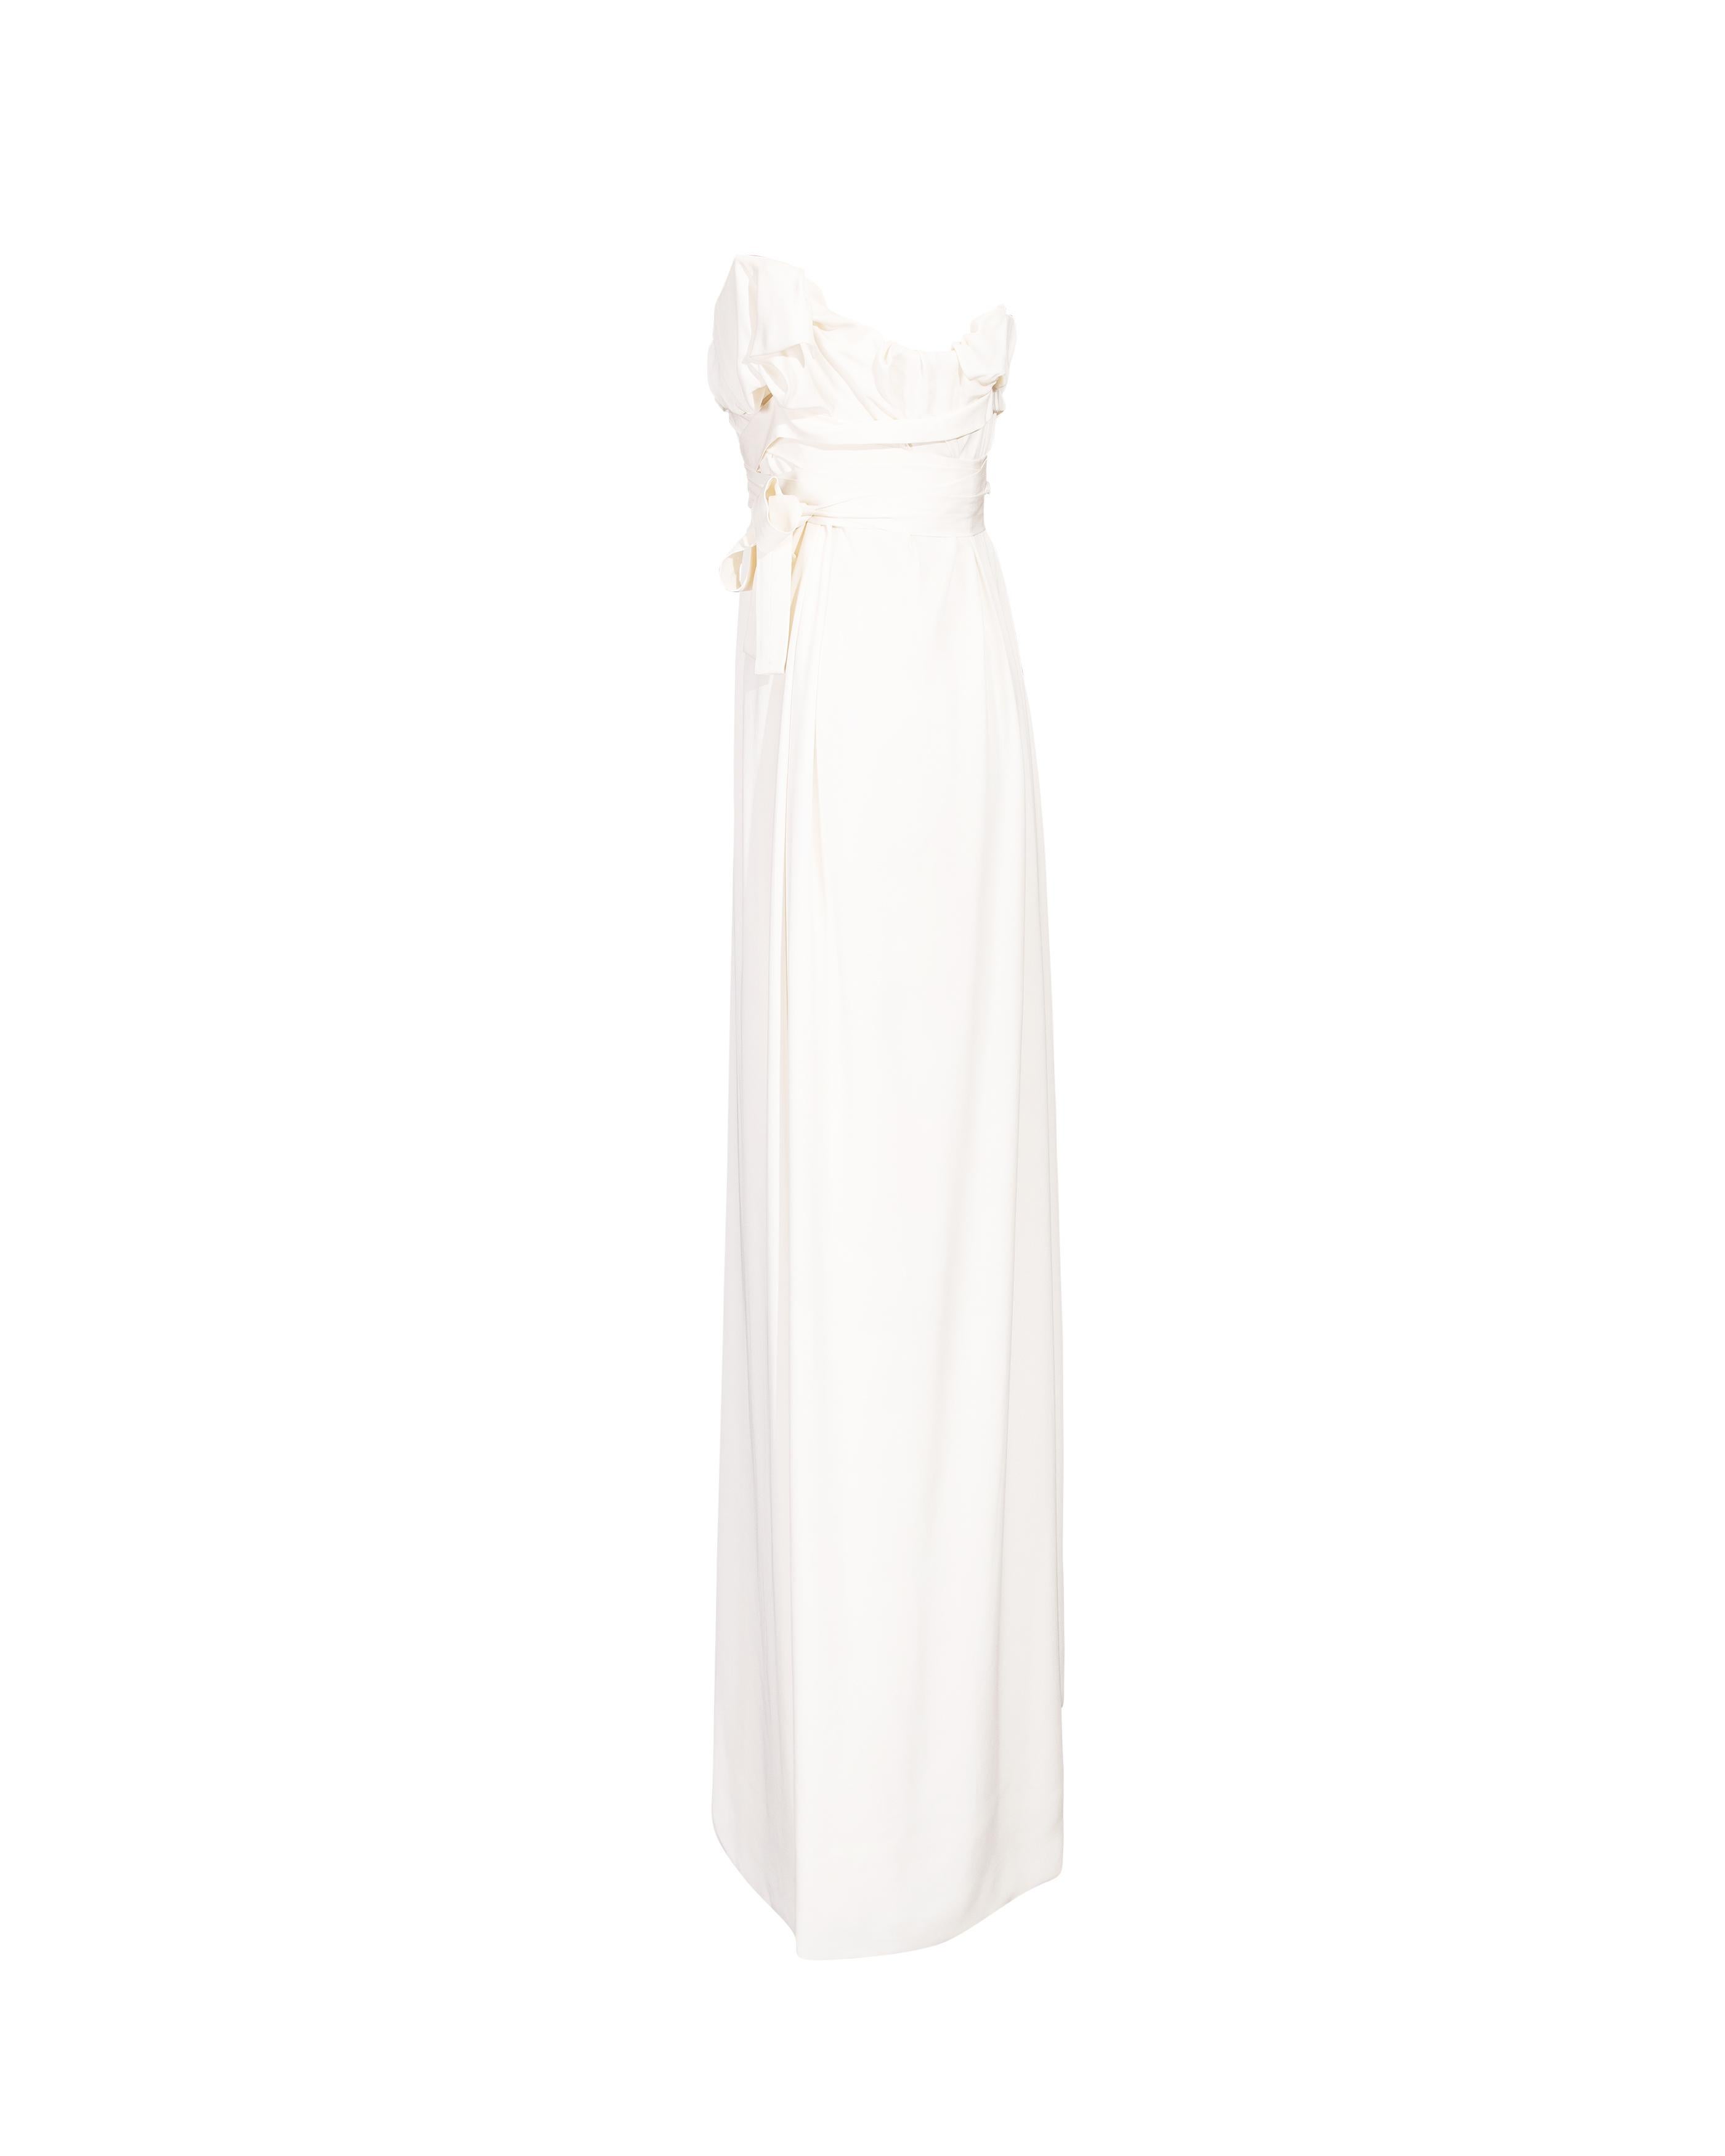 S/S 2014 Vivienne Westwood White Strapless Silk Drape Gown (robe drapée en soie sans bretelles) Excellent état à North Hollywood, CA